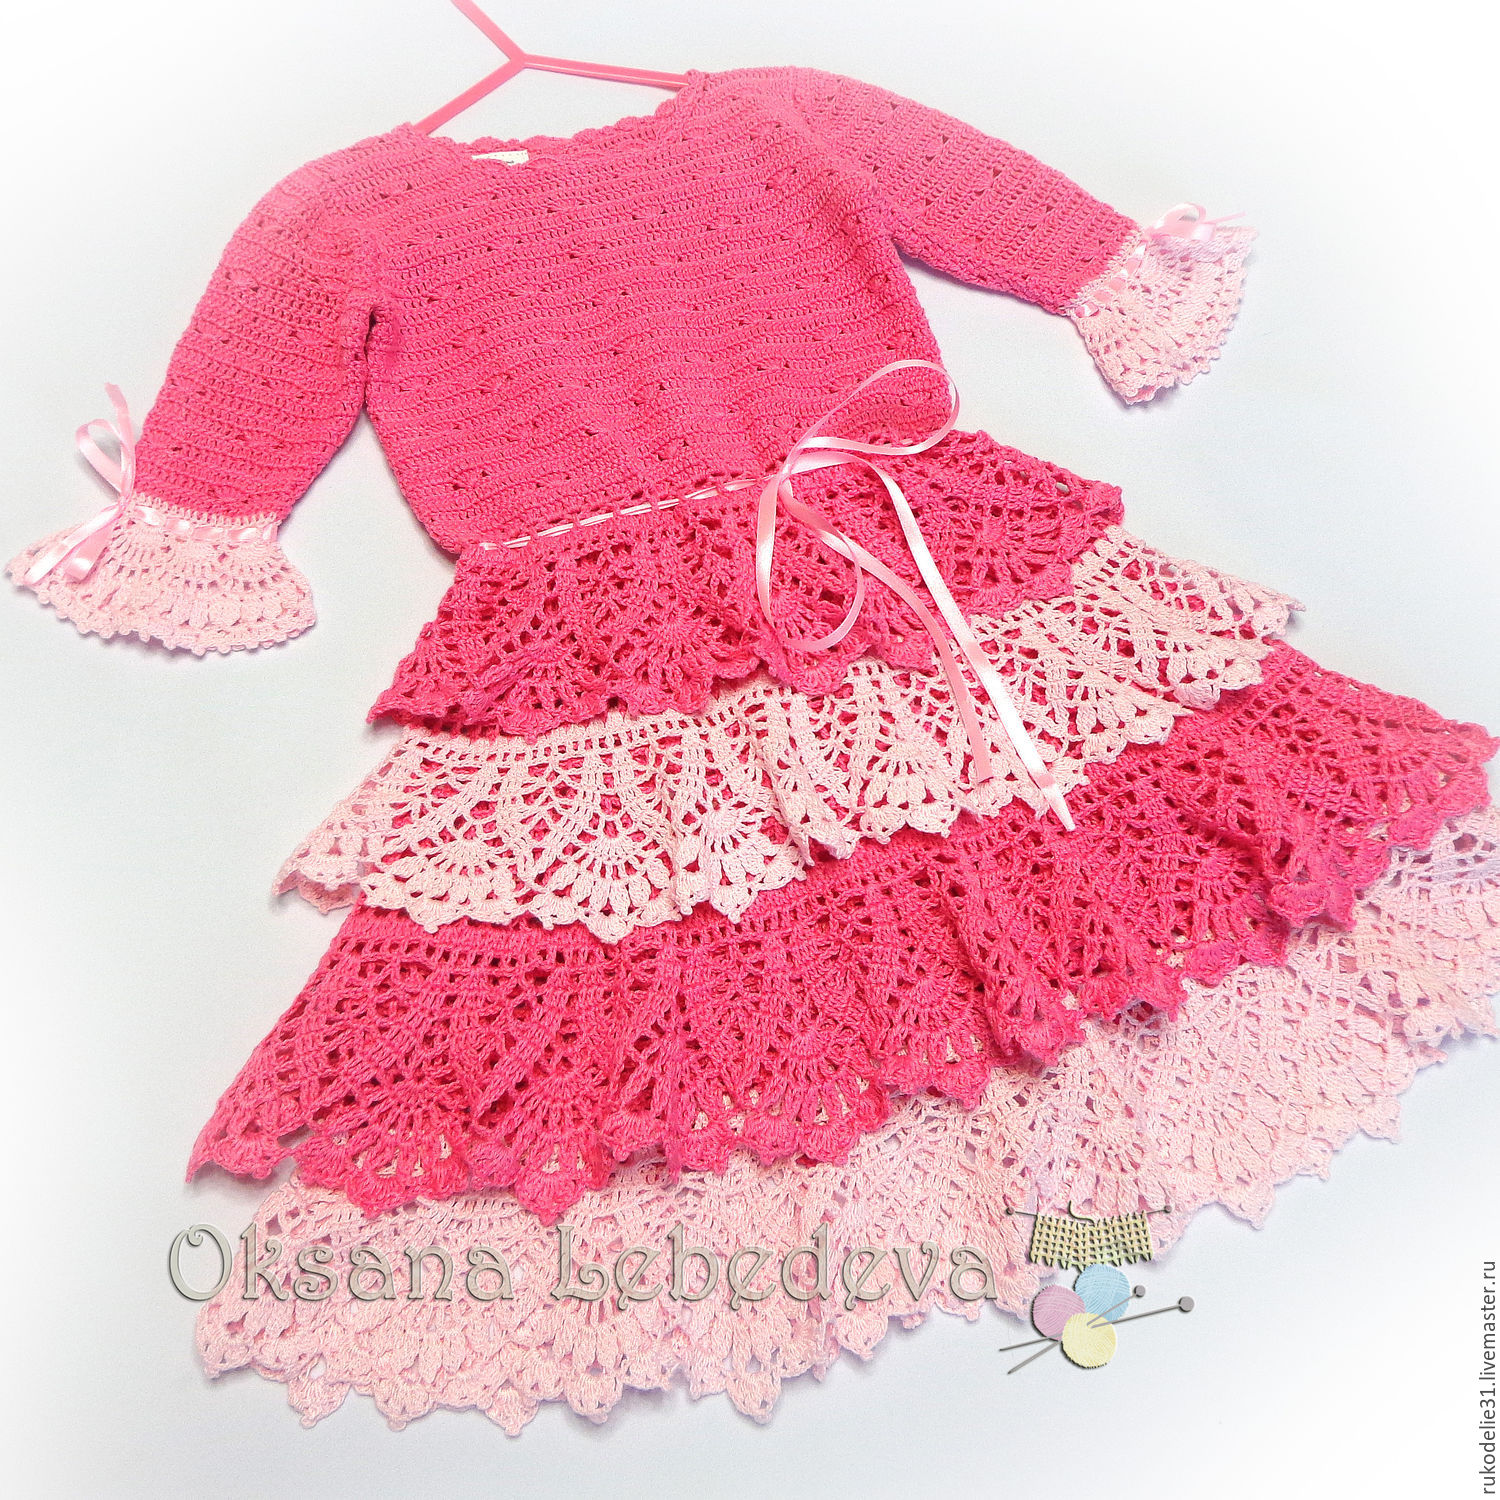 Платье крючком для девочки 4 года. Платье крючком для девочки. Розовое вязаное платье для девочки. Ажурное платье крючком для девочки. Вязаные платья для девочек 4-5 лет.